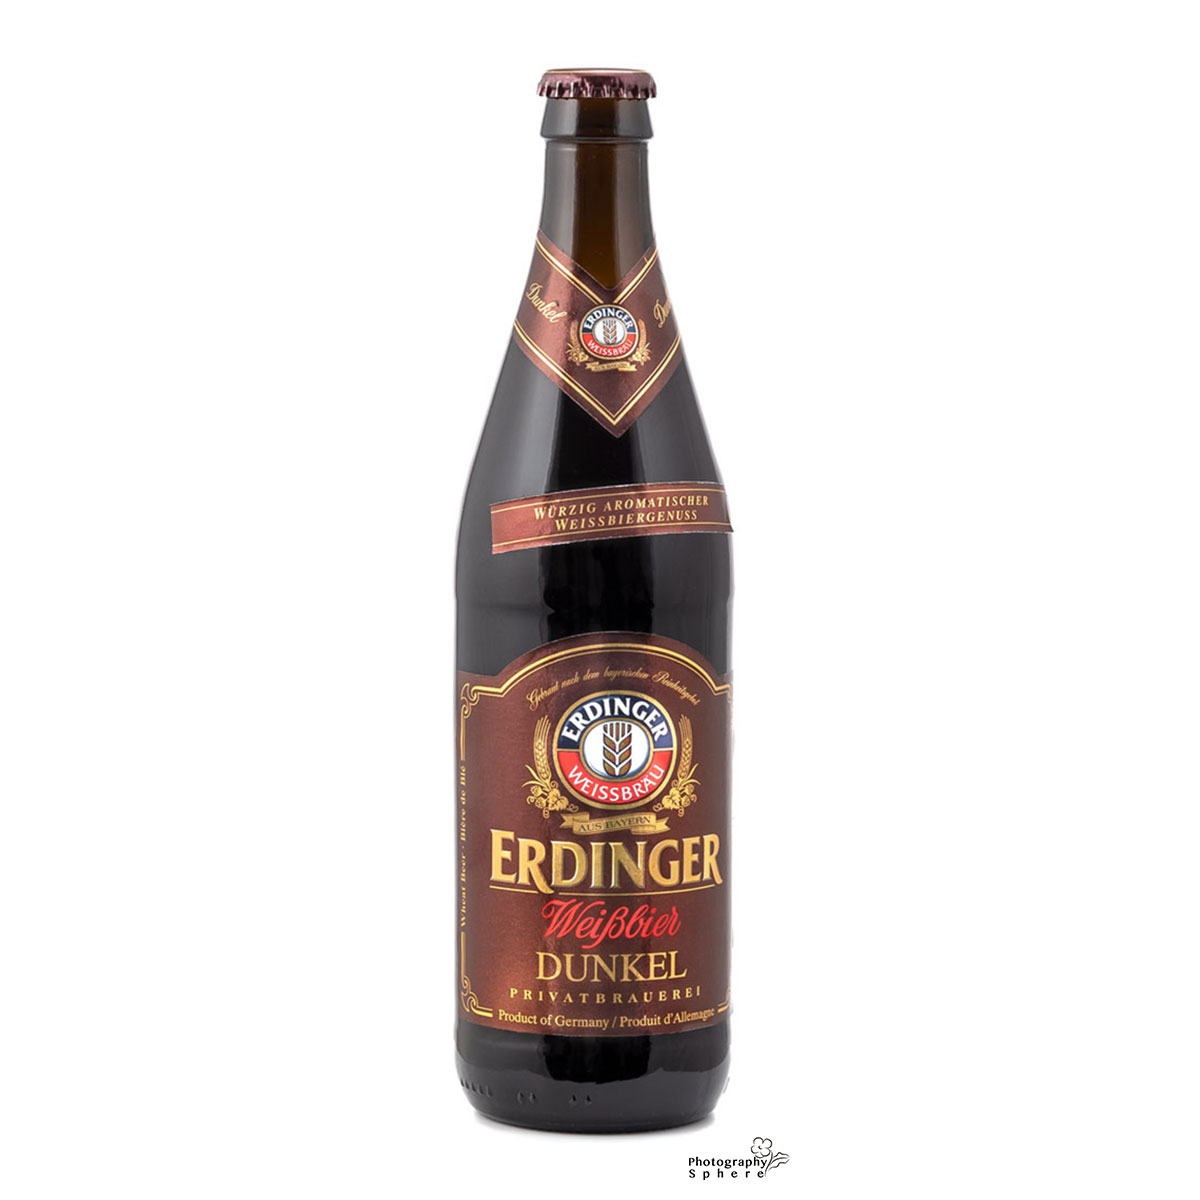 Erdinger beer bottle image